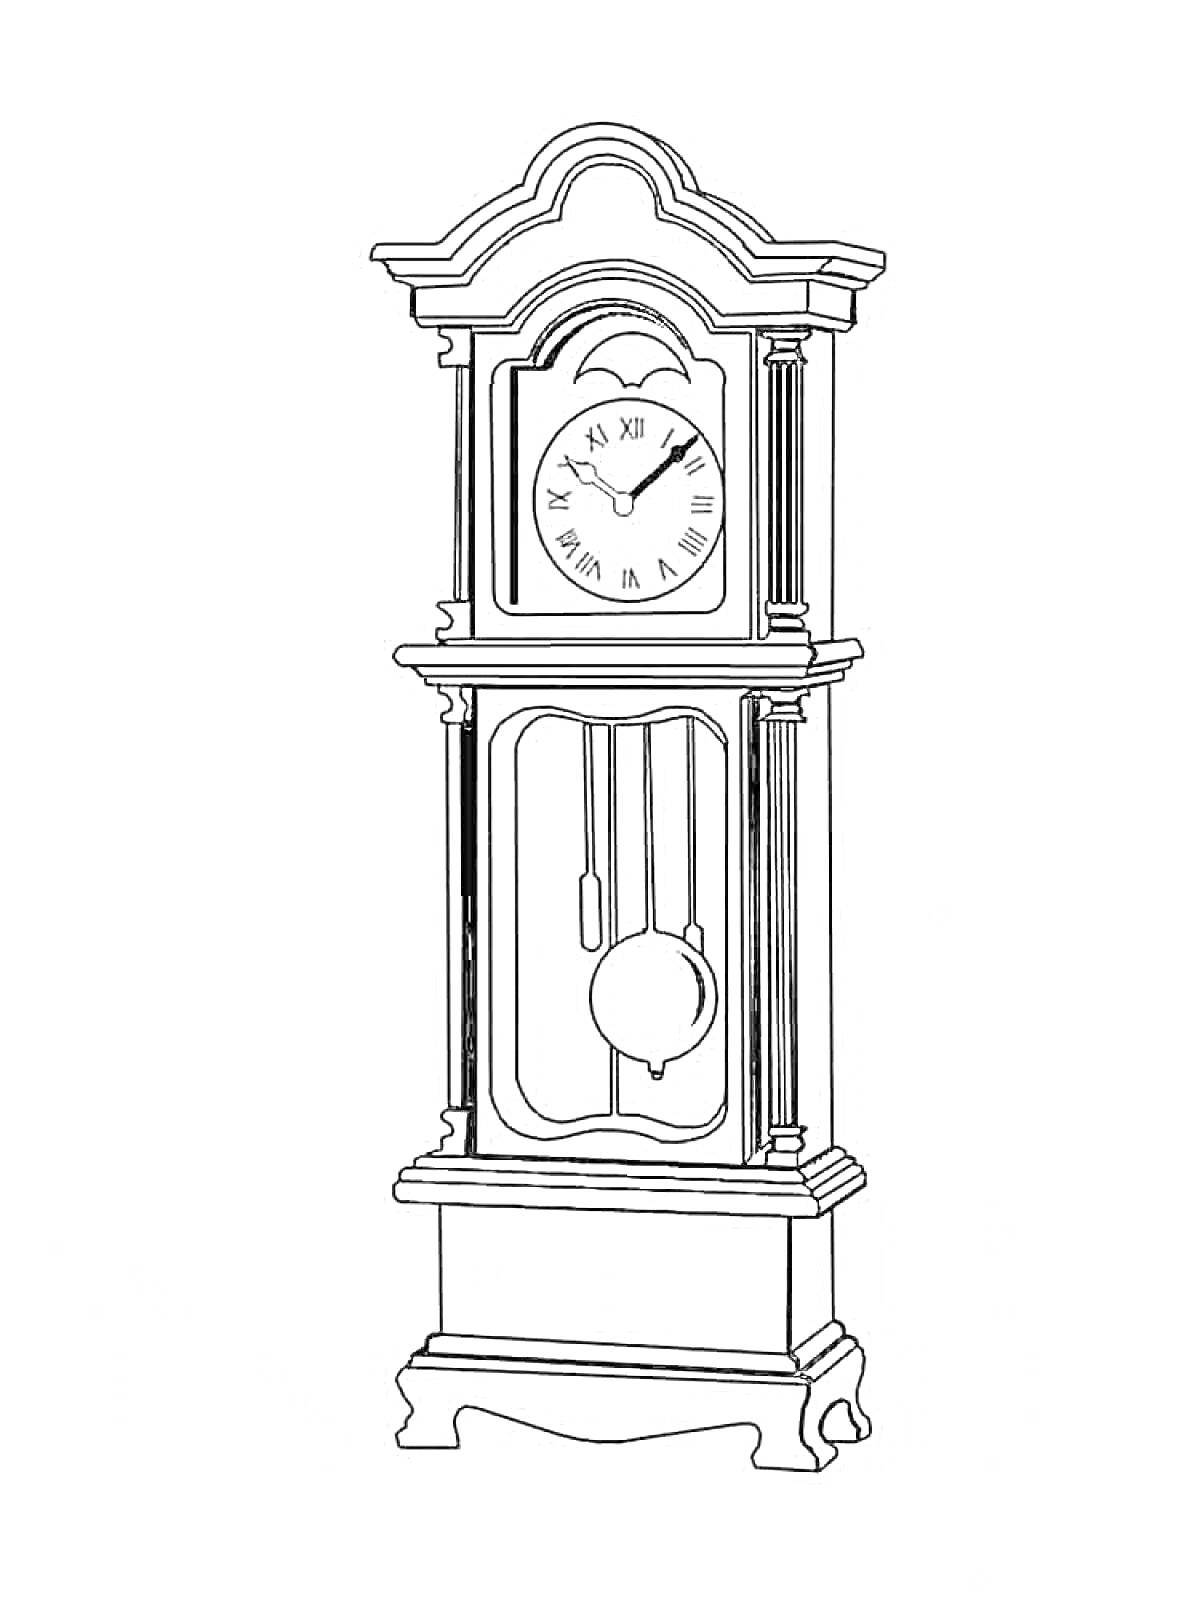 Раскраска Напольные механические часы с маятником и римскими цифрами на циферблате